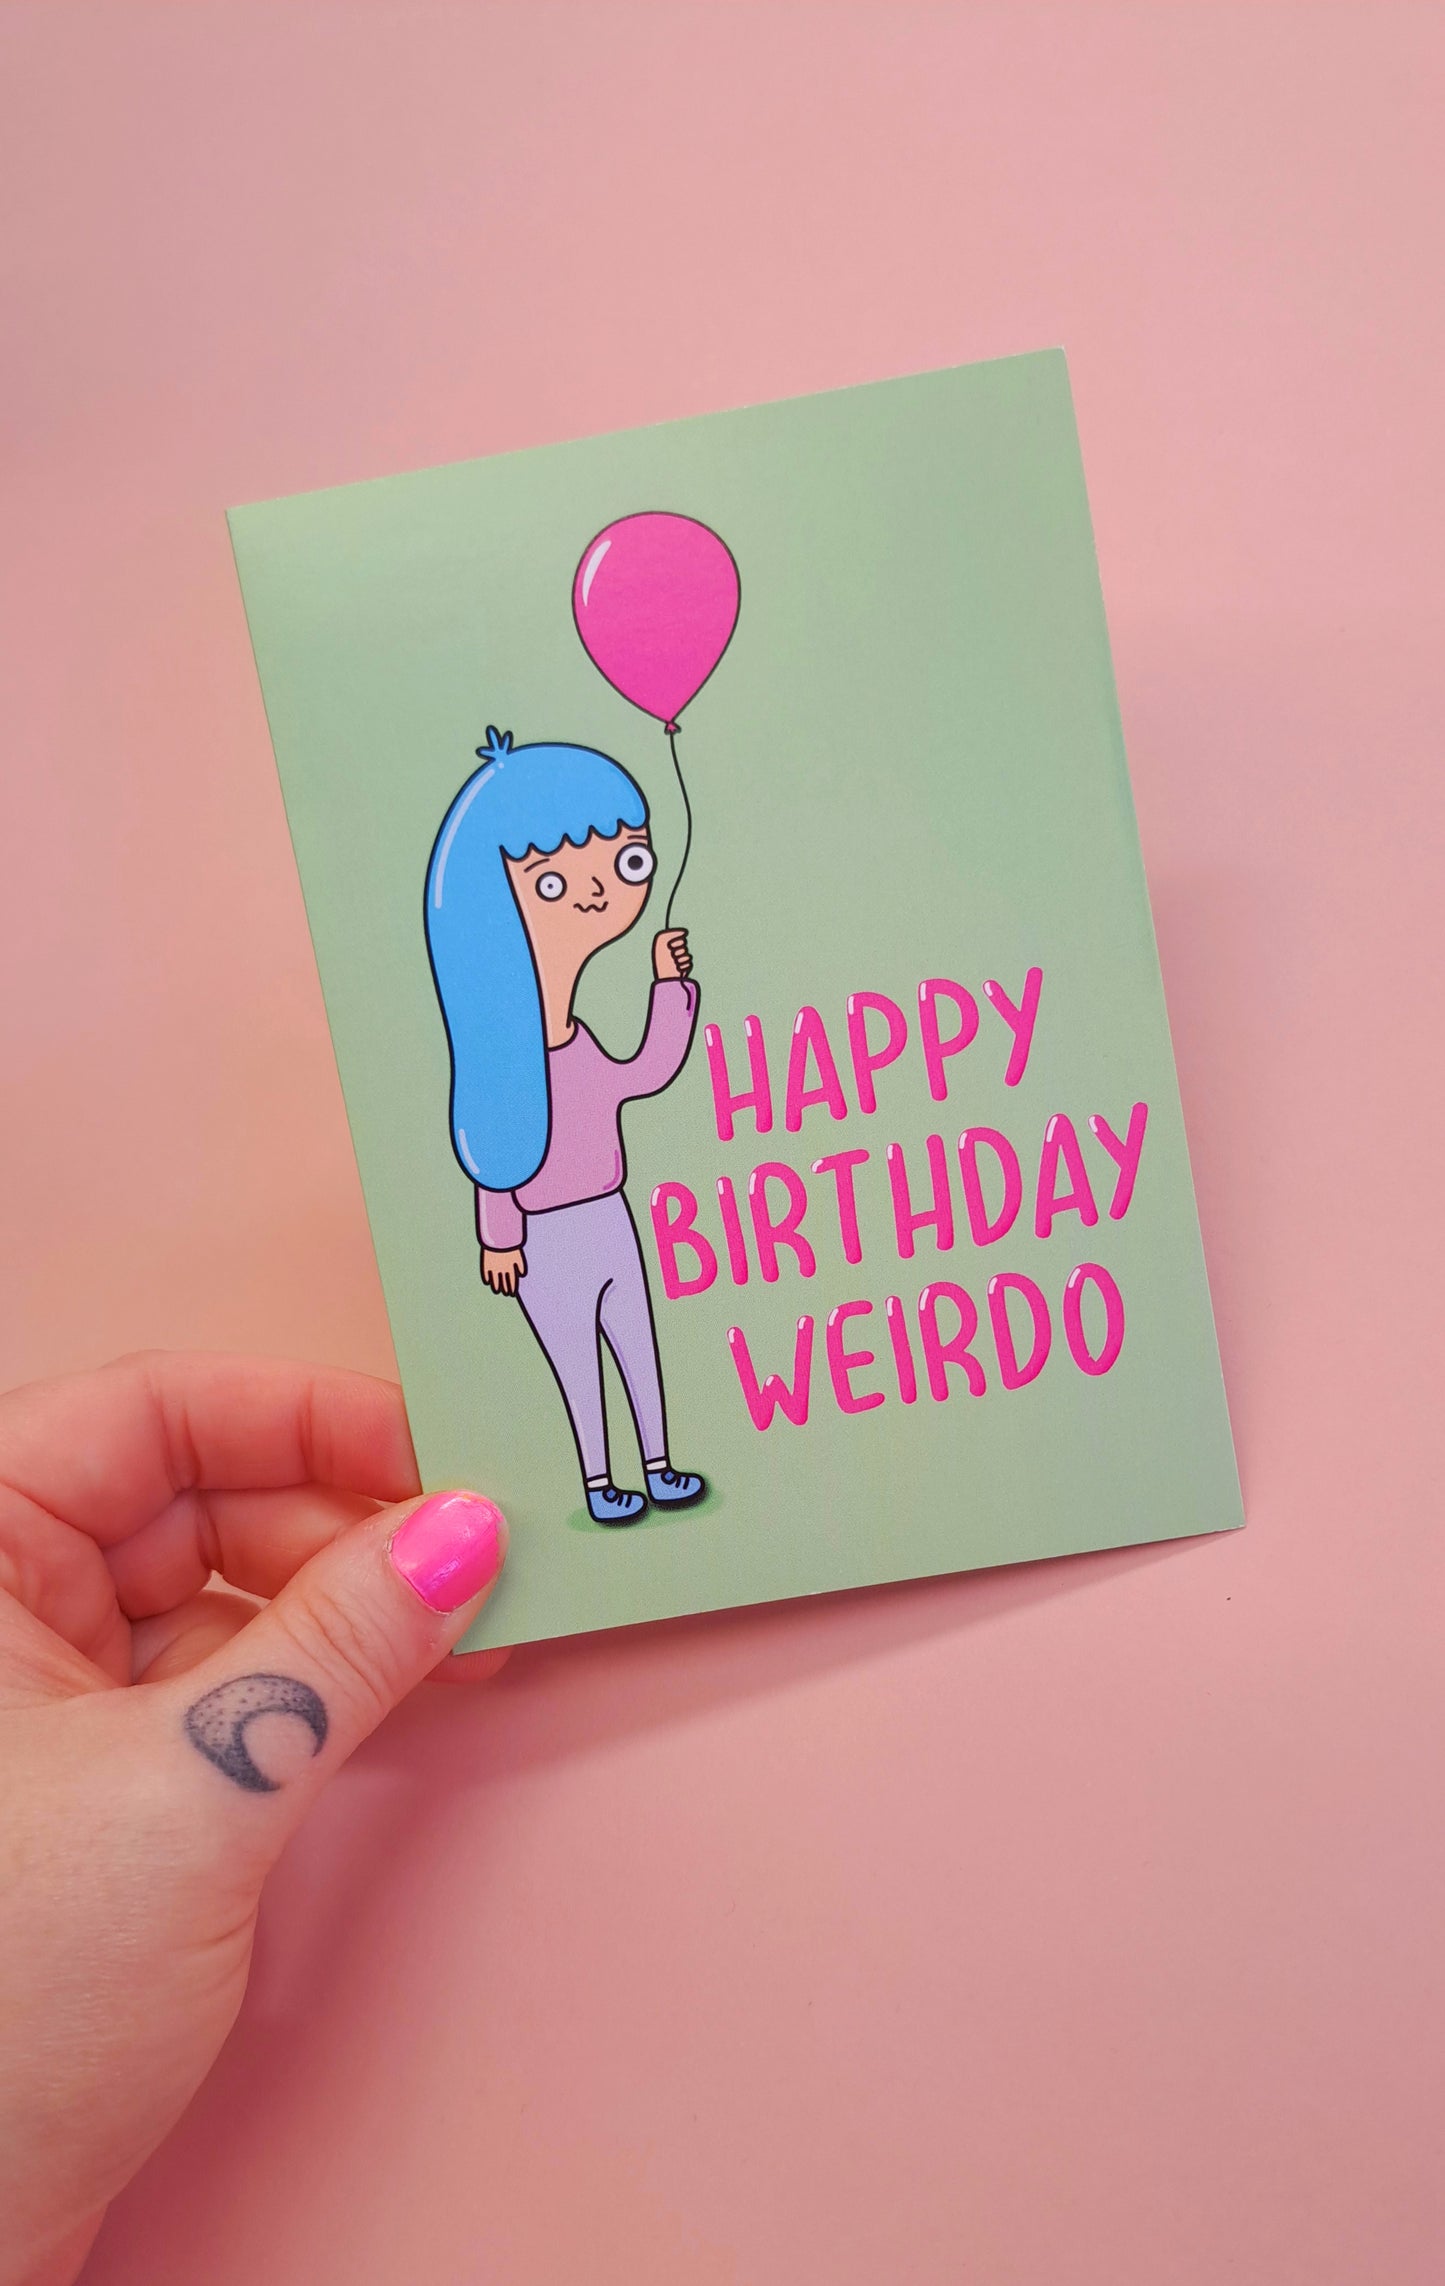 Weirdo Birthday Card